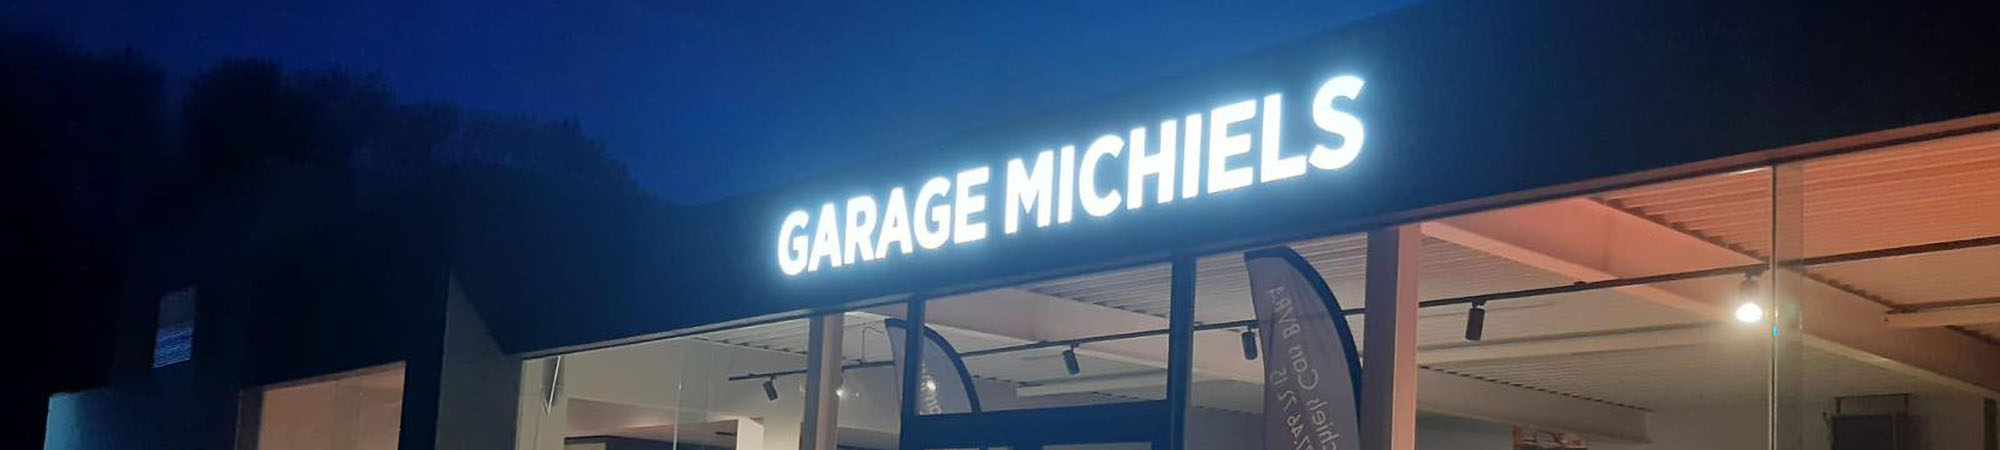 Garage Michiels August BVBA (5)